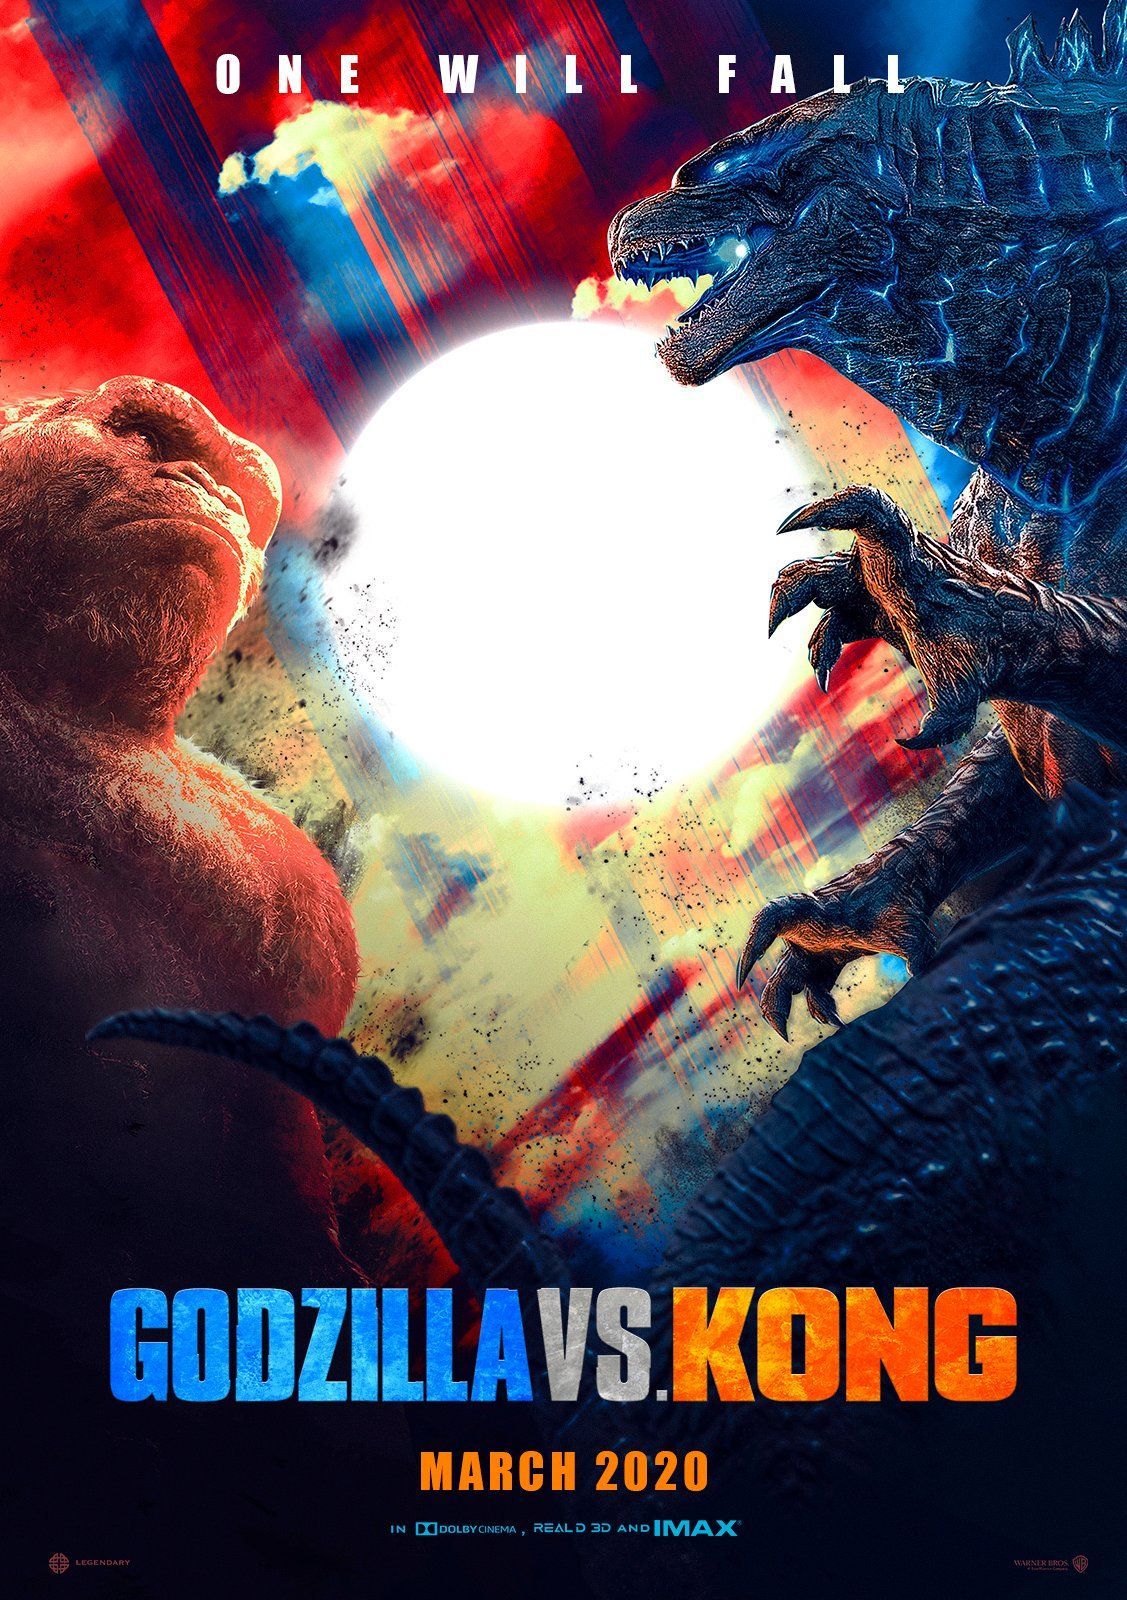 Twitter. King kong vs godzilla, Godzilla vs, King kong